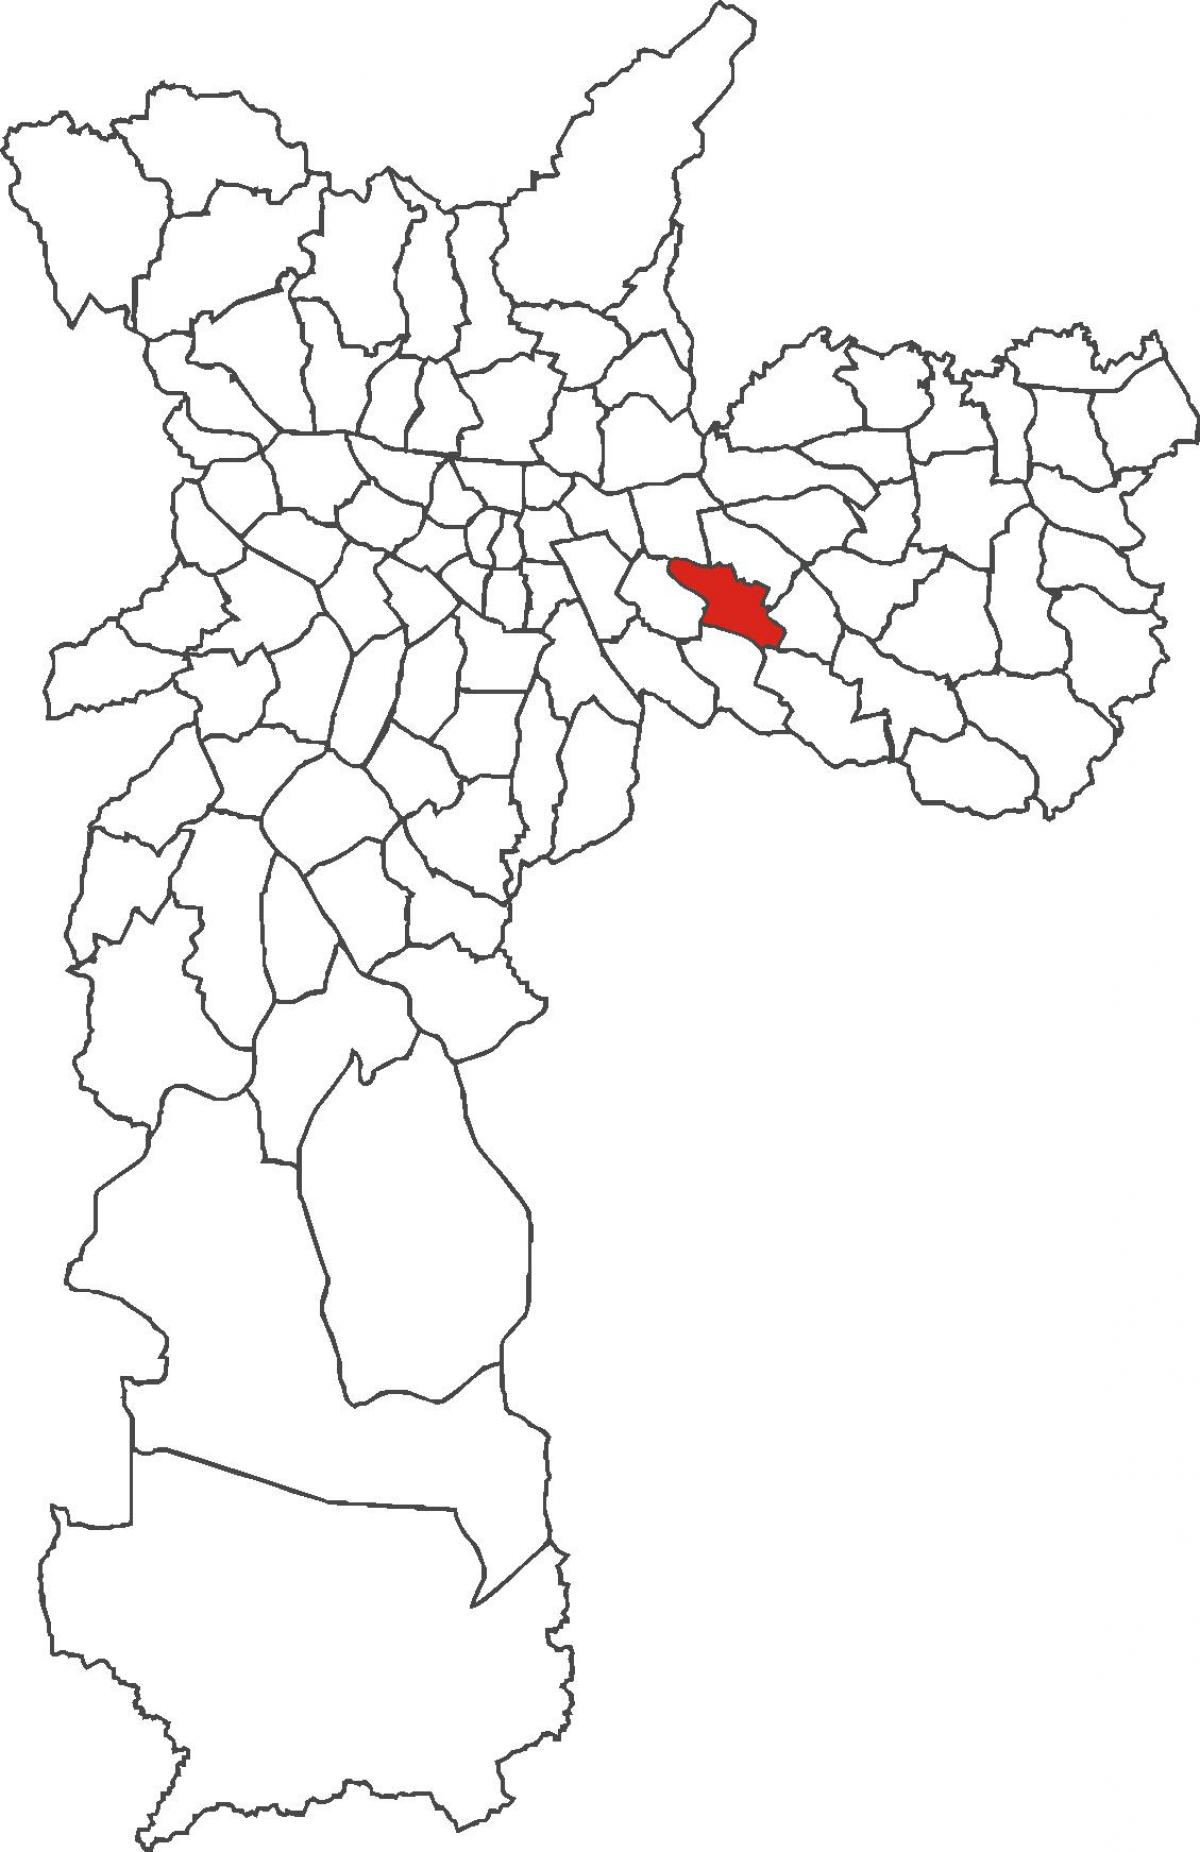 નકશો Vila Formosa જિલ્લા